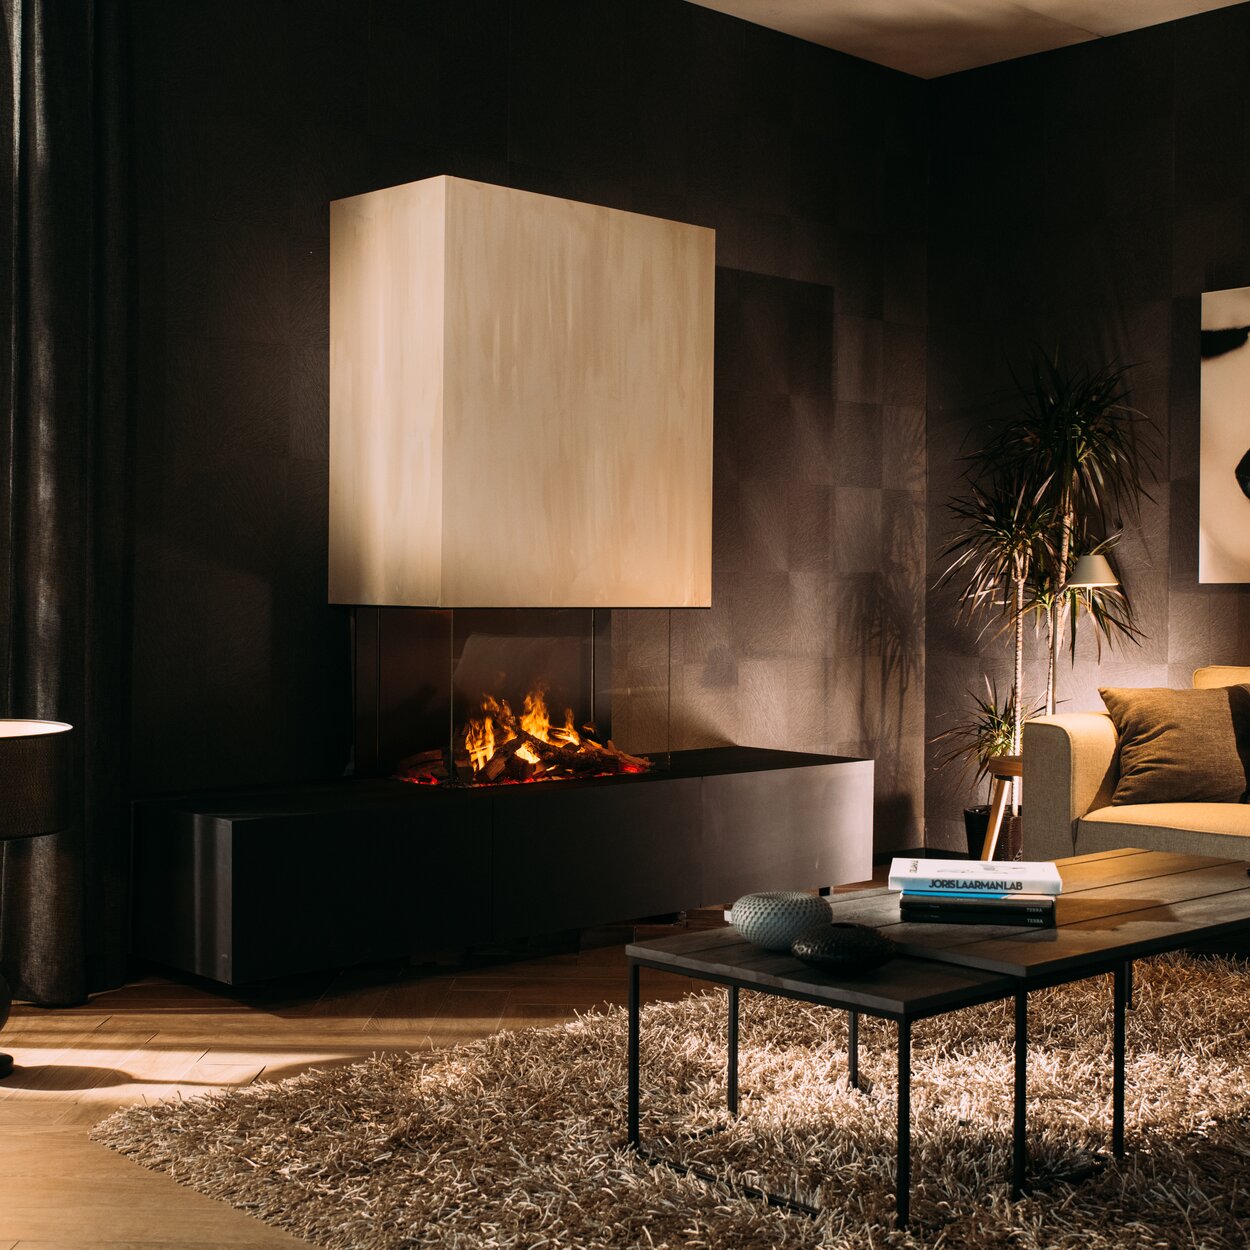 Il caminetto elettrico eMatriX Mood 800/500 smaltato su 3 lati in un elegante soggiorno con pareti scure e mobili chiari.